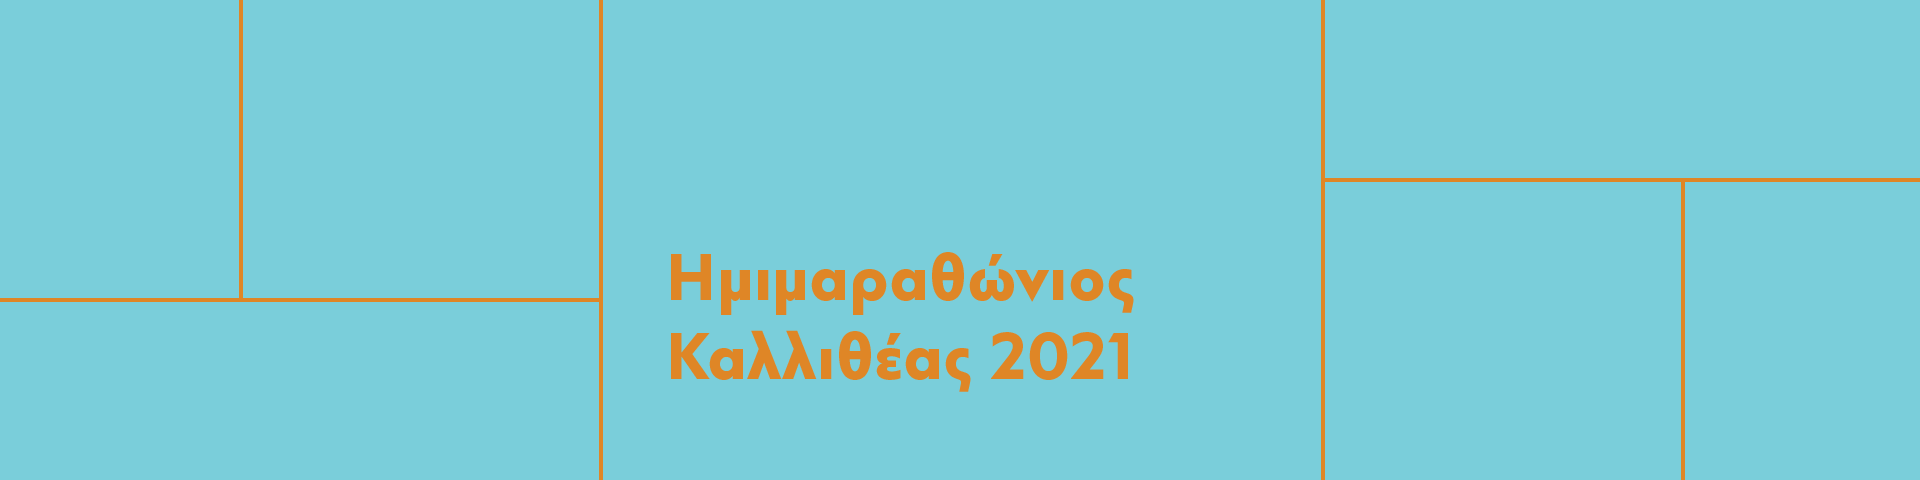 Ημιμαραθώνιος Καλλιθέας 2021 - Εικόνα